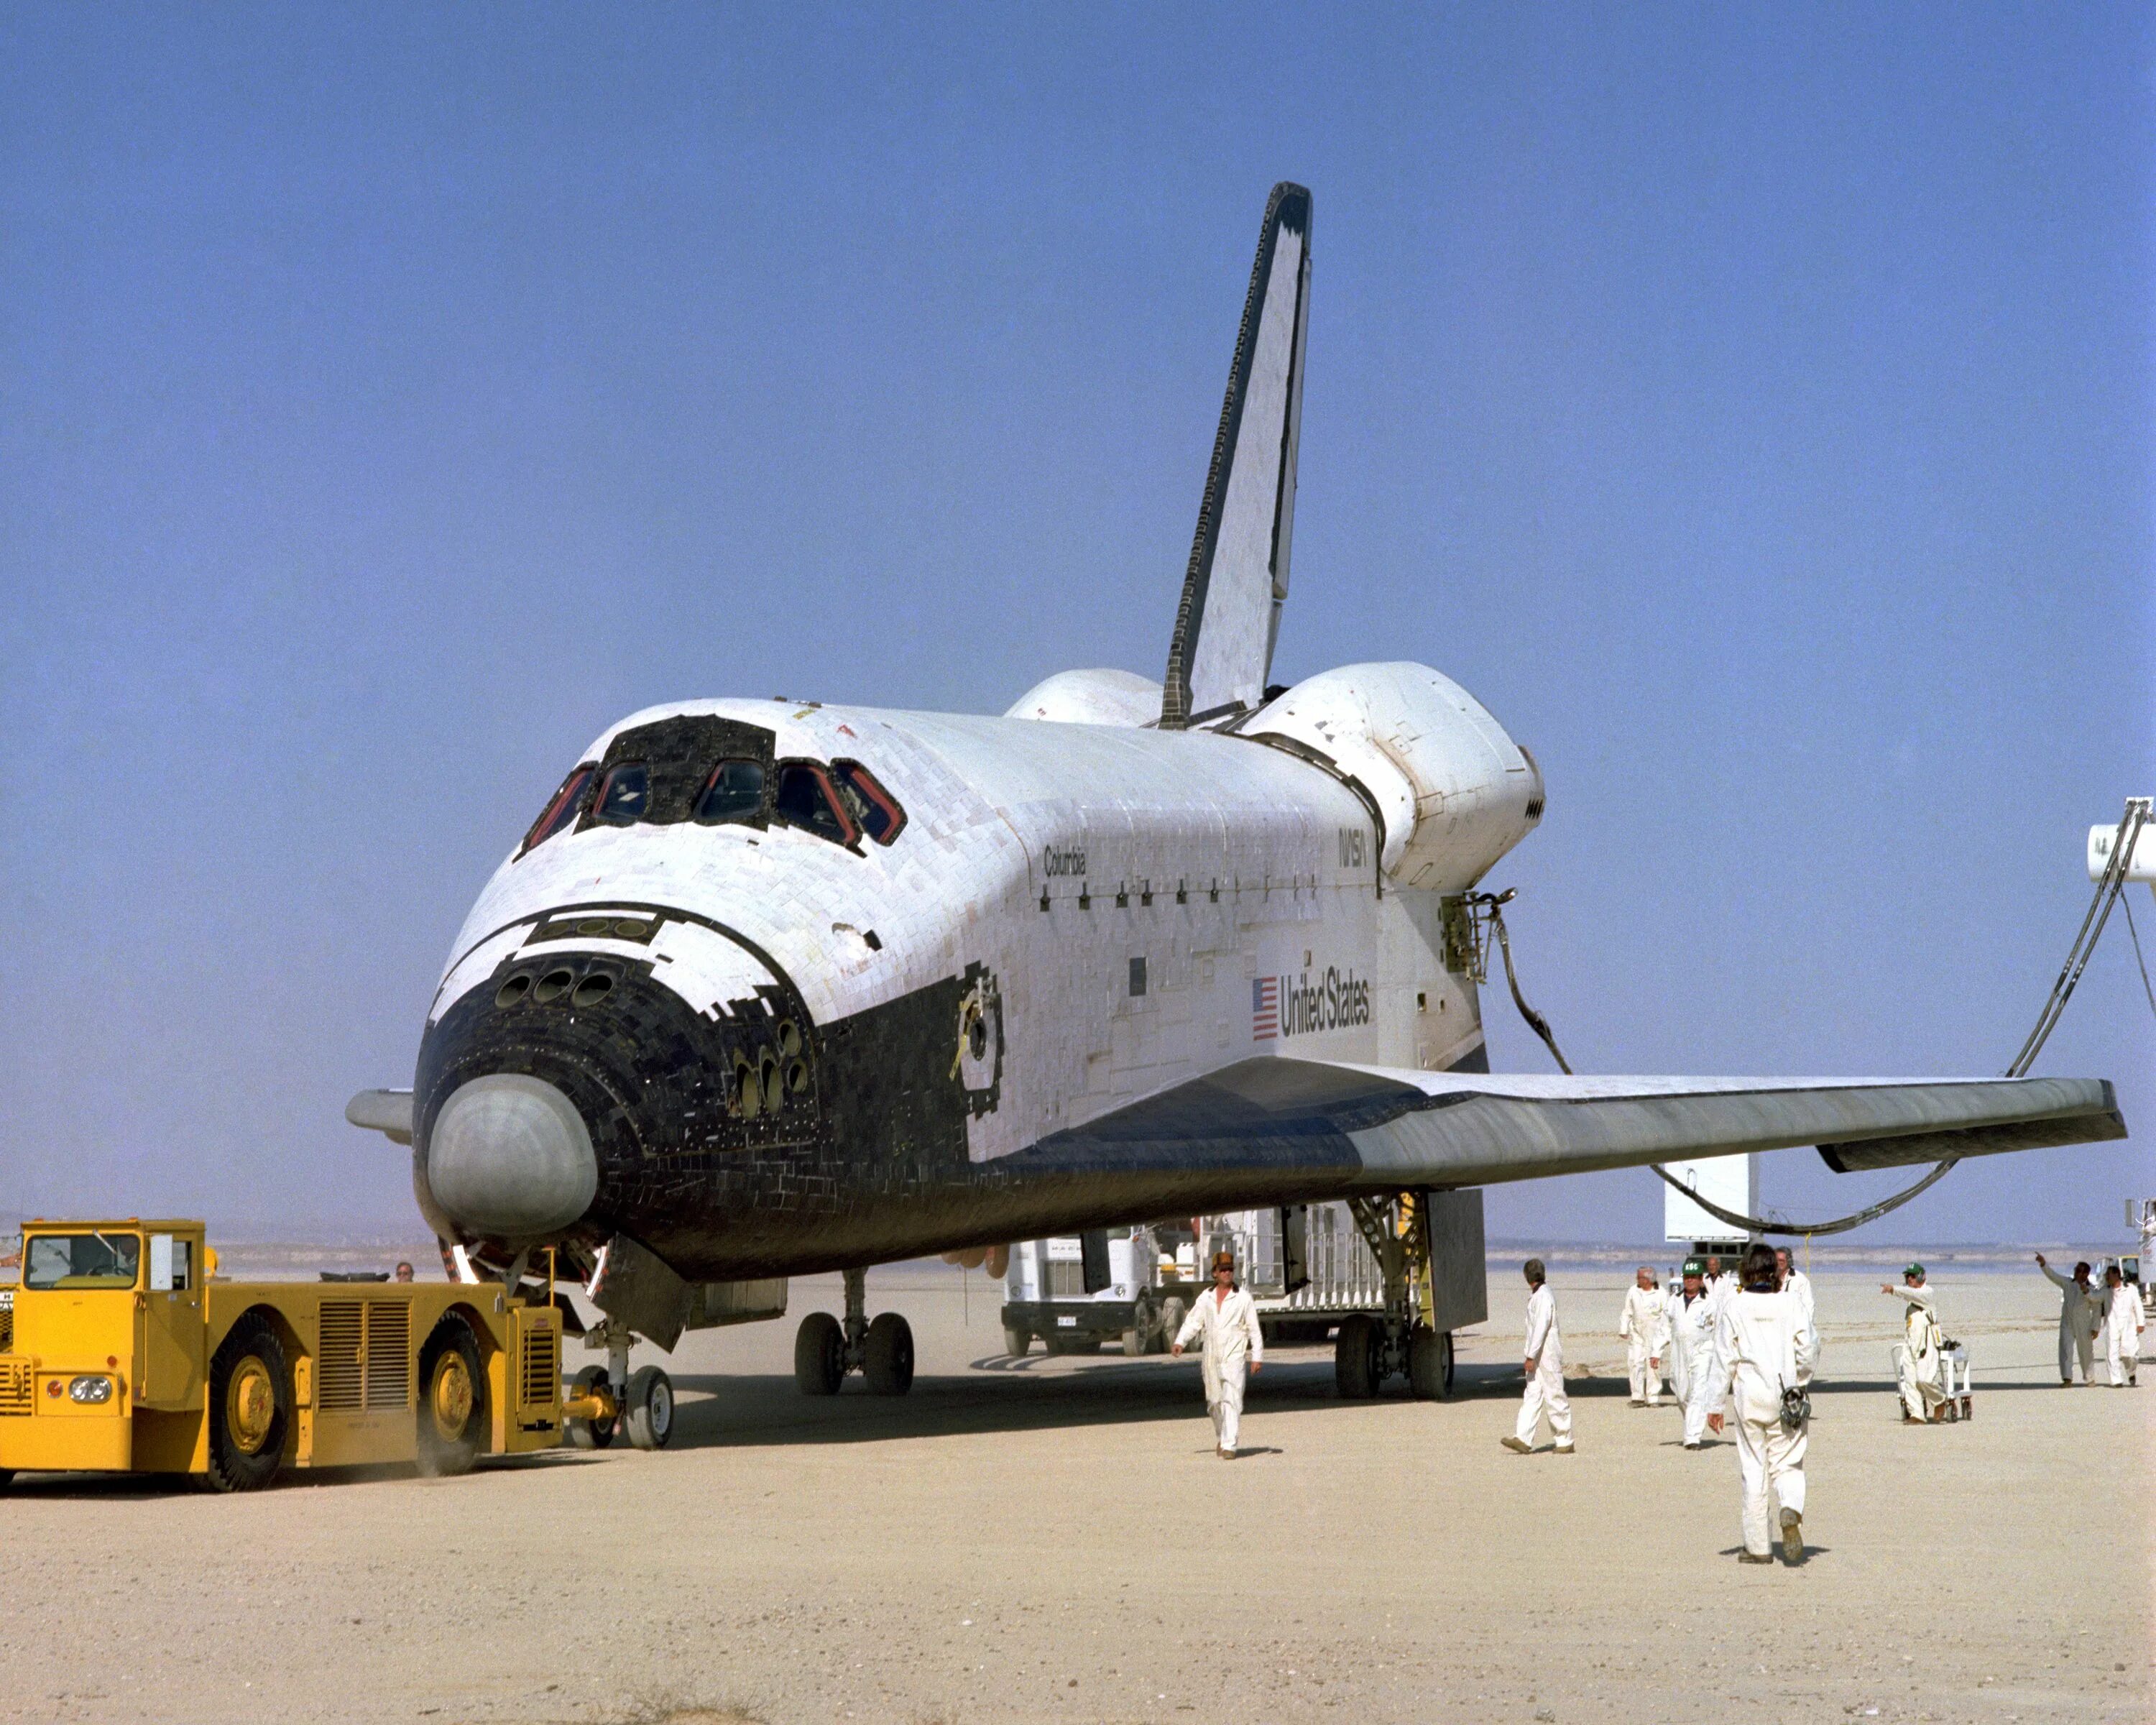 Первый космический челнок. Шаттл Колумбия STS-1 1981. Спейс шаттл Колумбия 1981. Space Shuttle Колумбия. Шаттл НАСА Колумбия.